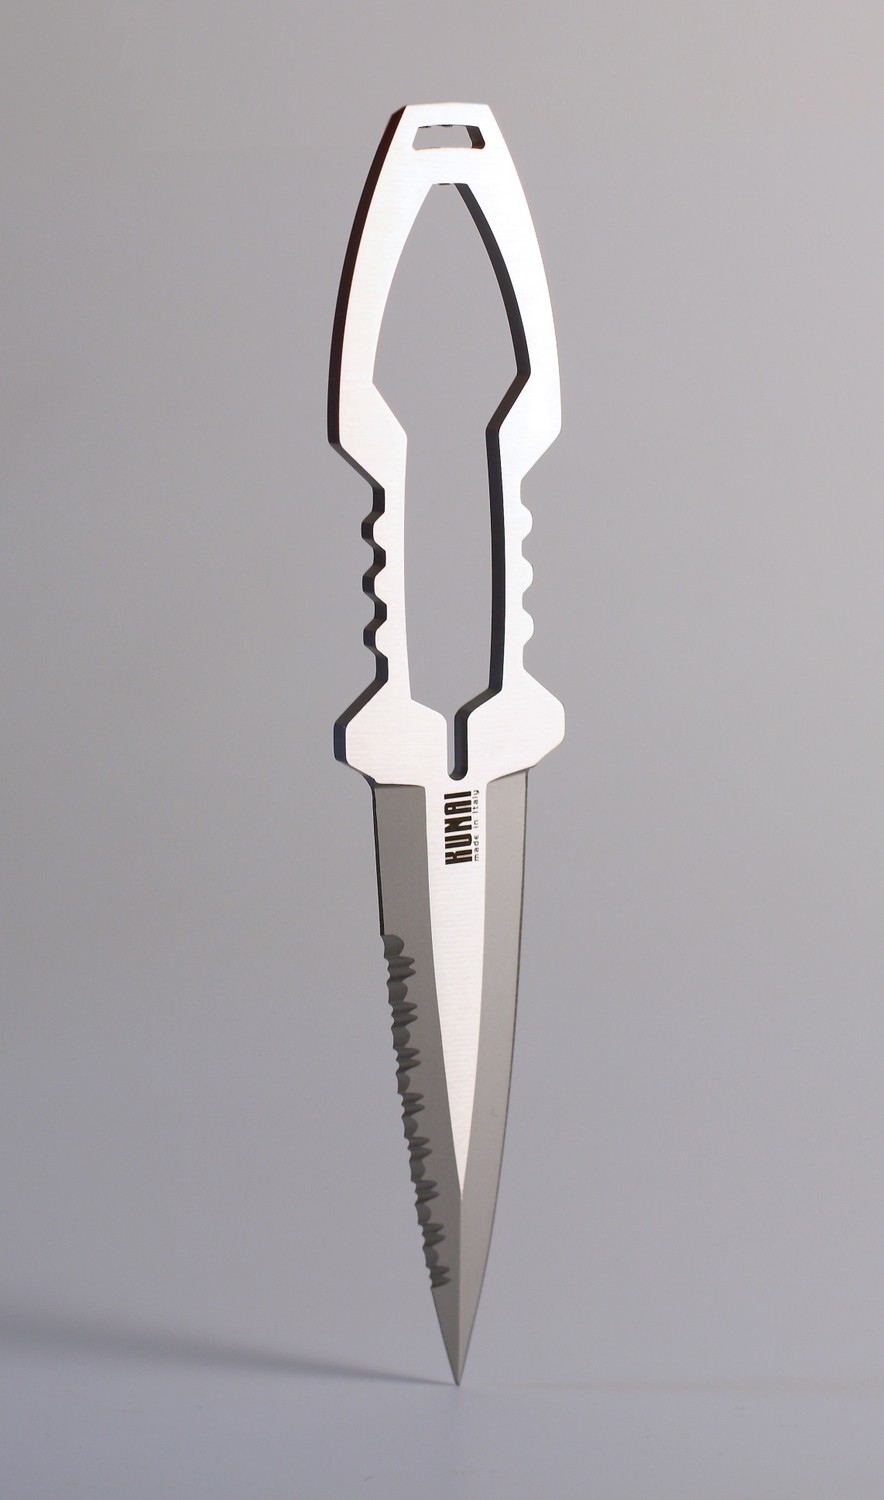 Kunai knife